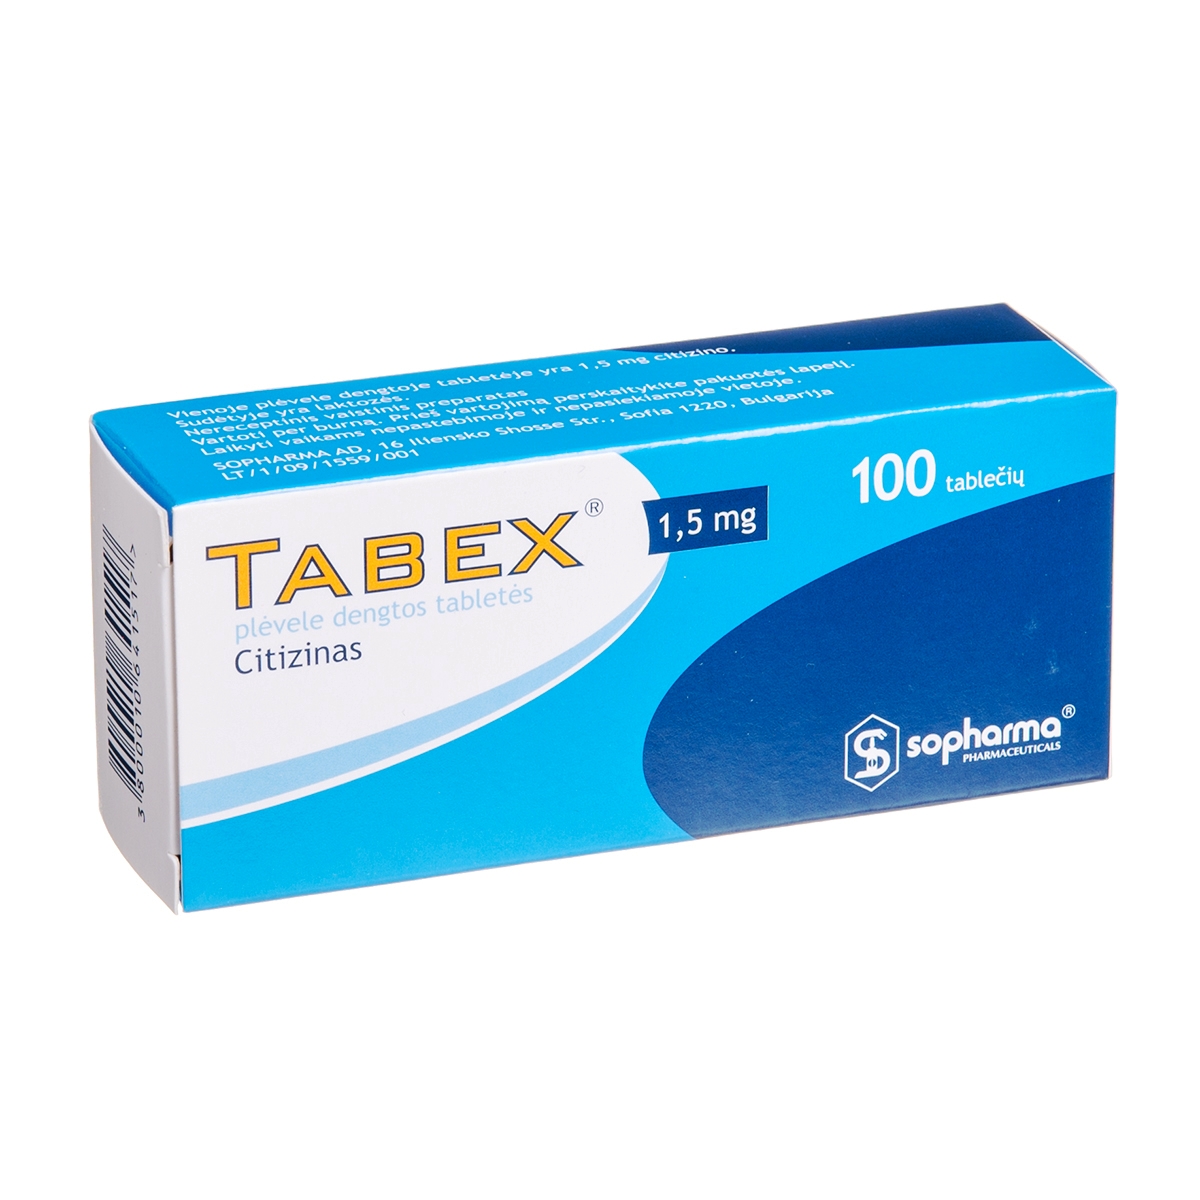 Sopharma Shop - Tabex 1,5 mg (100 tablets)